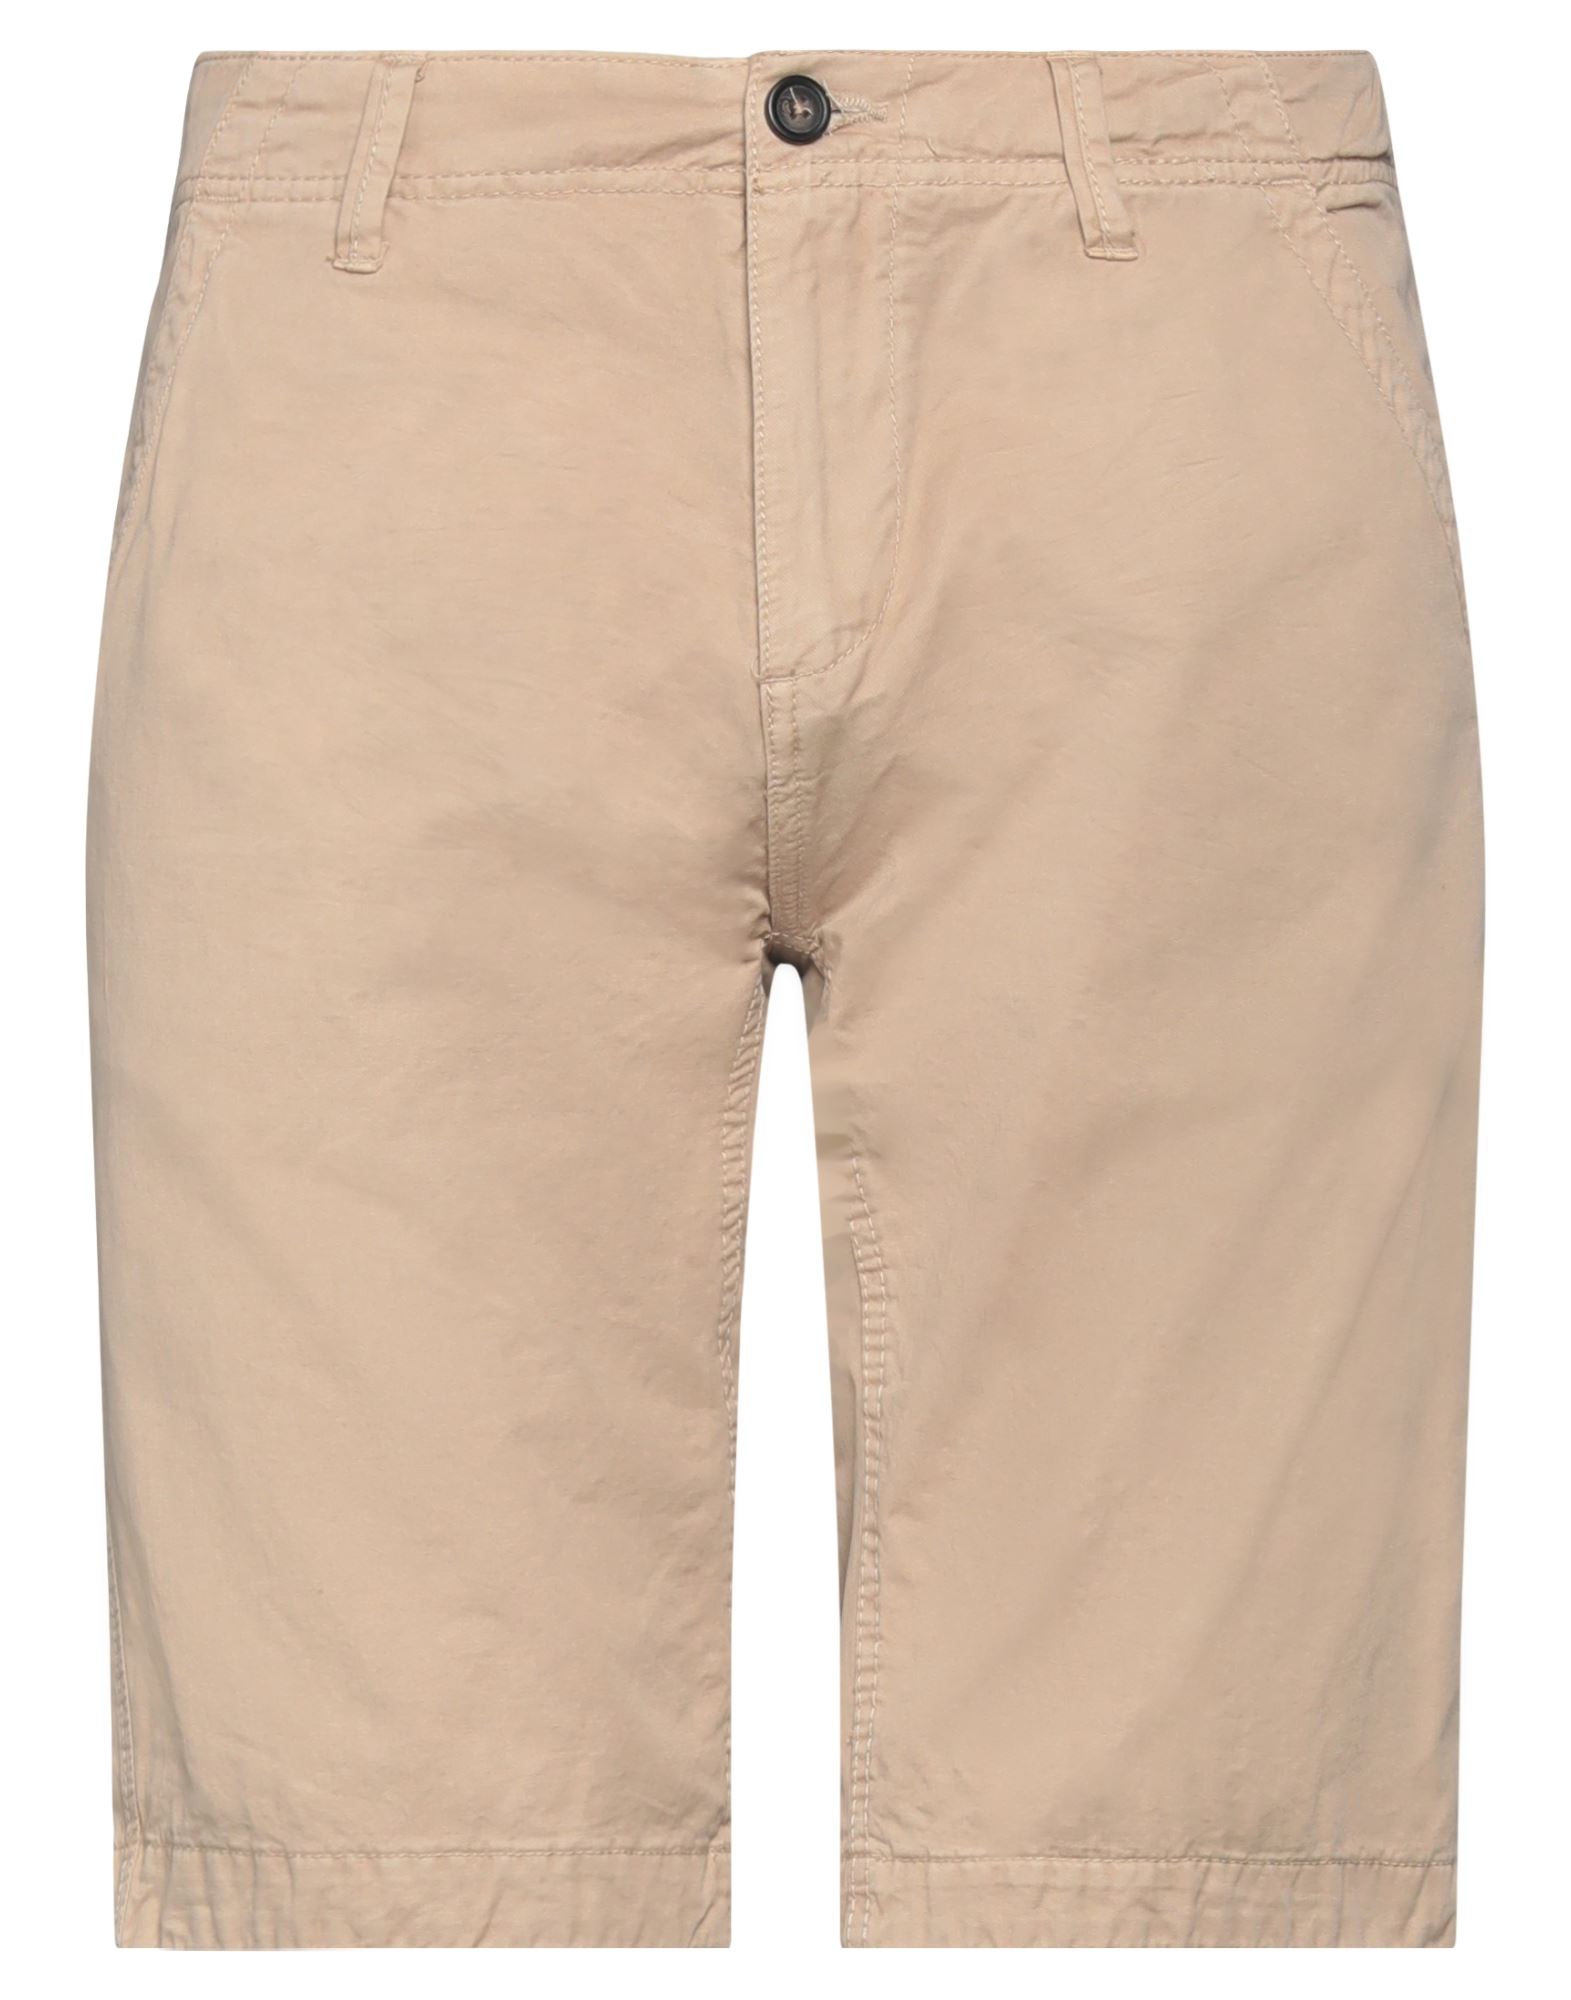 A.f.f Associazione Fabbri Fiorentini A. F.f Associazione Fabbri Fiorentini Man Shorts & Bermuda Shorts Beige Size 40 Cotton